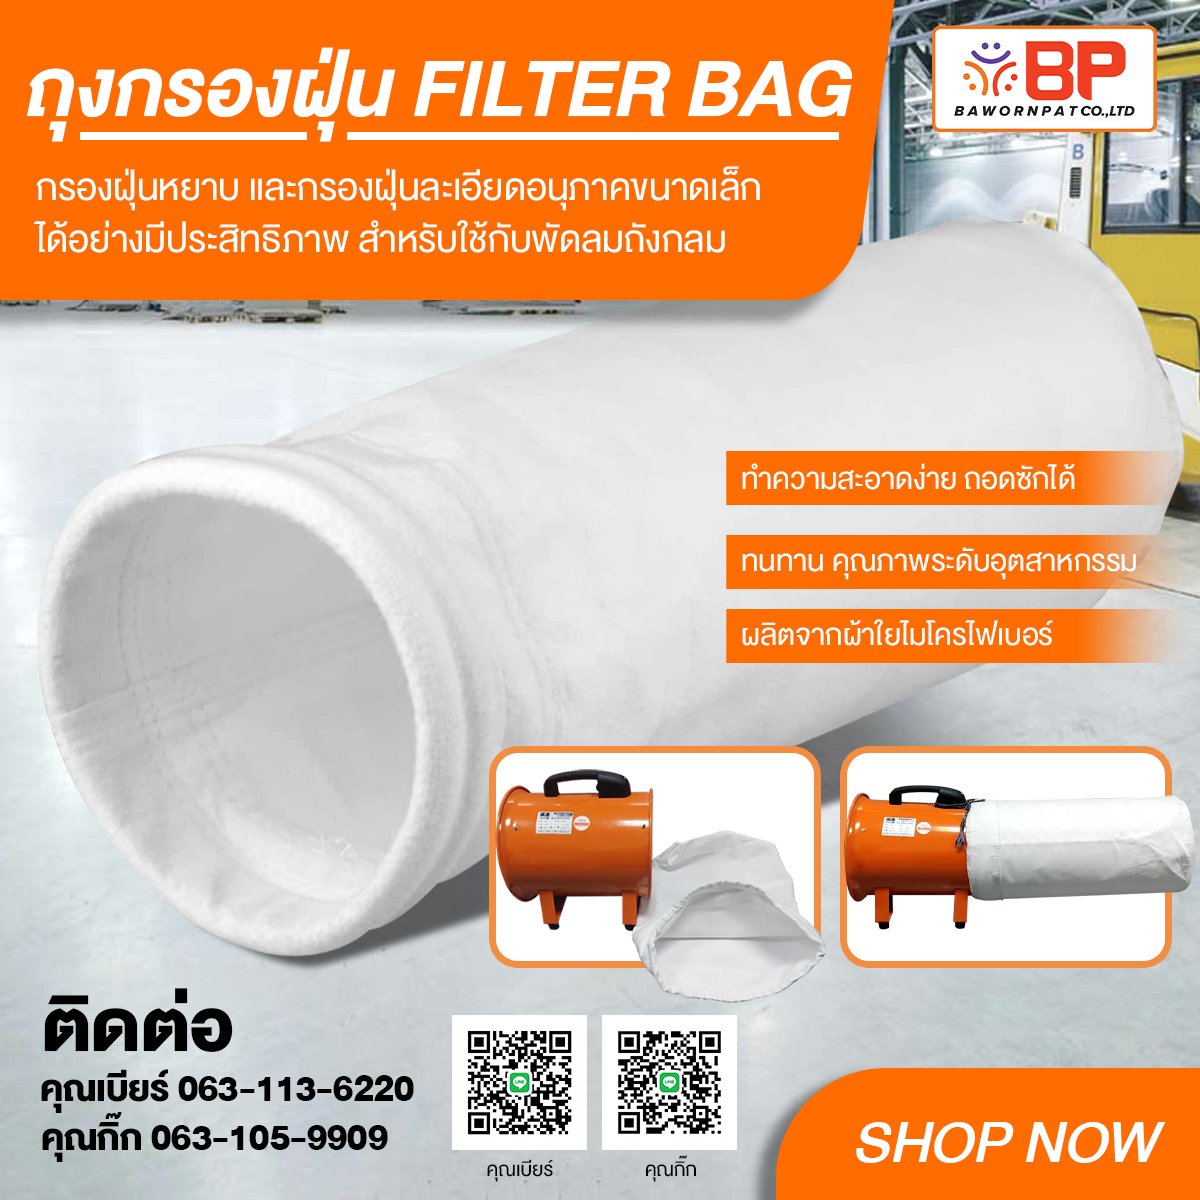 ถุงกรองฝุ่น filter bag ถุงกรองฝุ่นอุตสาหกรรม ถุงเก็บฝุ่น ขนาด 12นิ้ว Dia-300mm. ยาว 60cm. แบบกรองฝุ่นหยาบ